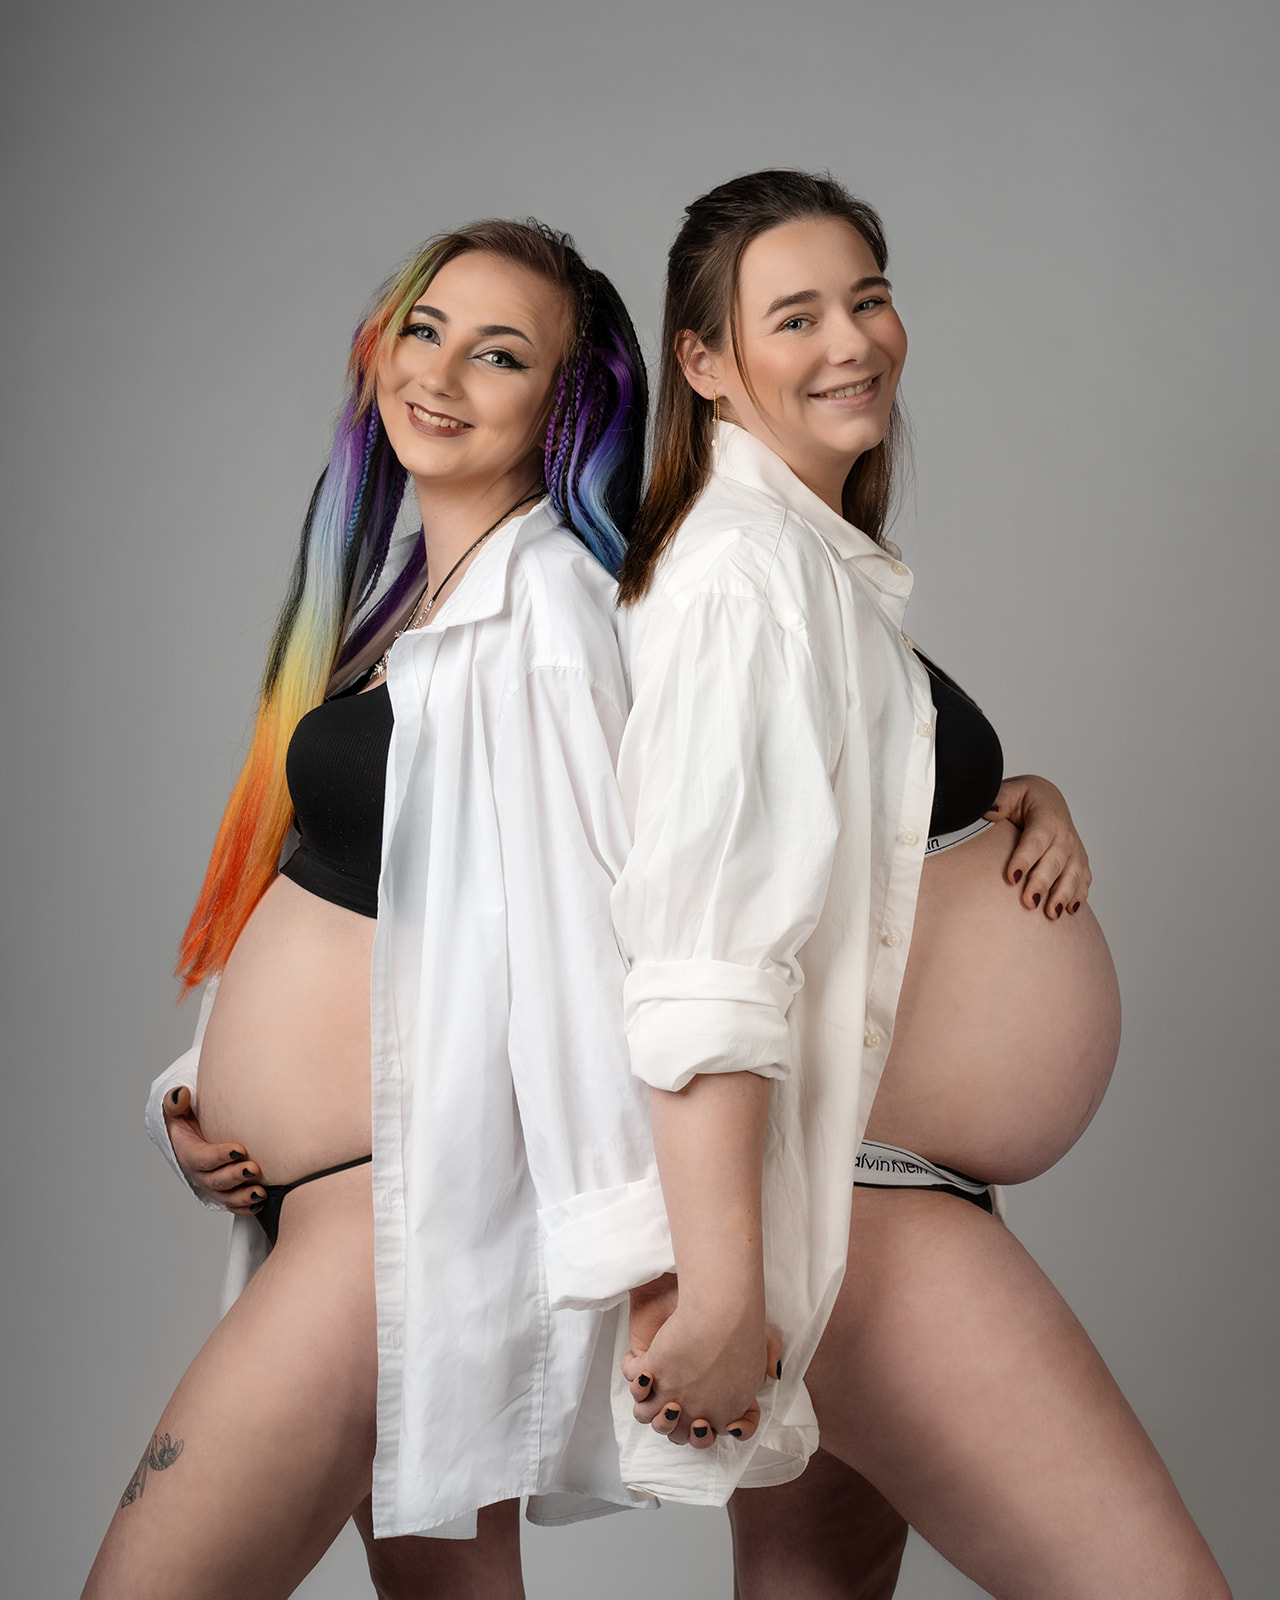 søstre der står op gravide på samme tid